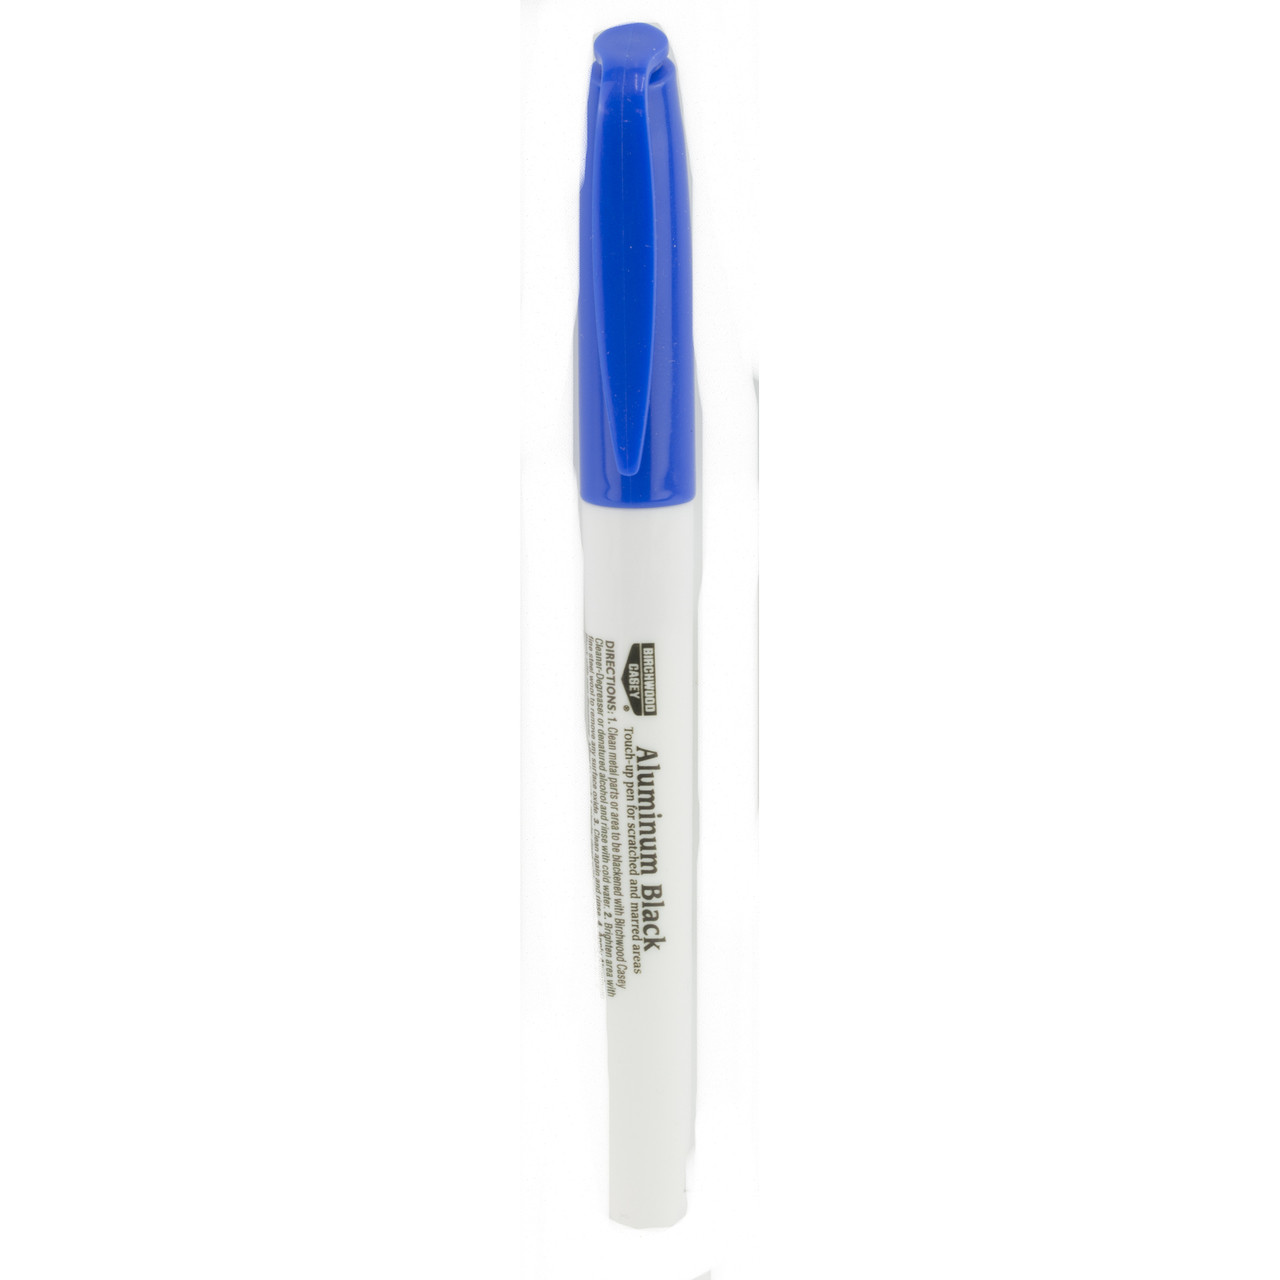 Birchwood Casey Aluminum Black, Touch Up Pen, 6 Pack 15121, UPC